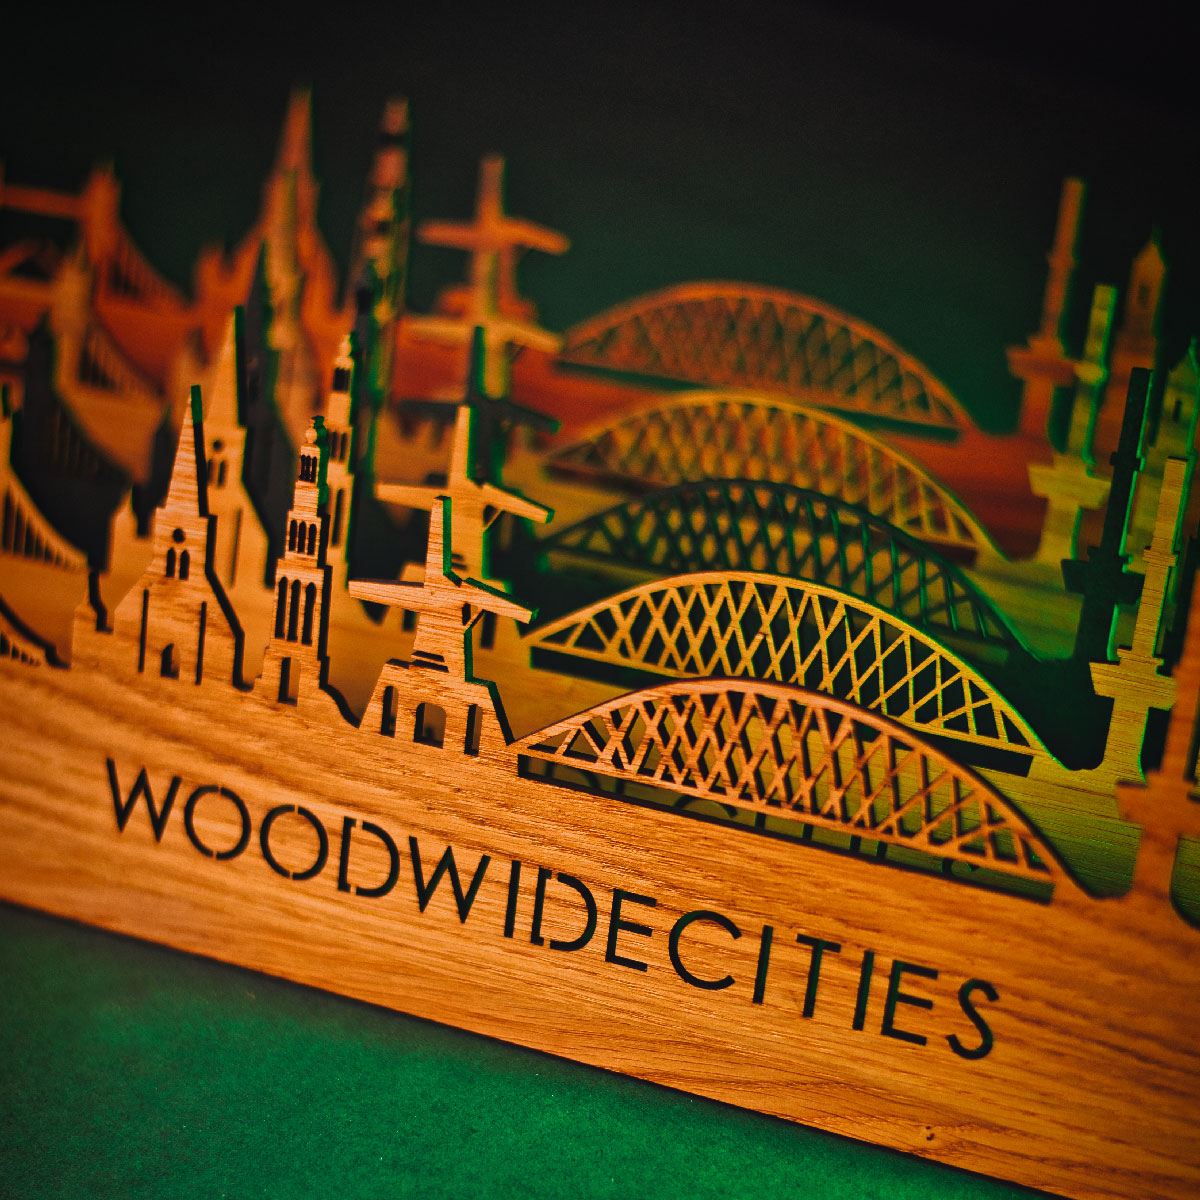 Skyline Klok Meppel Eiken houten cadeau wanddecoratie relatiegeschenk van WoodWideCities